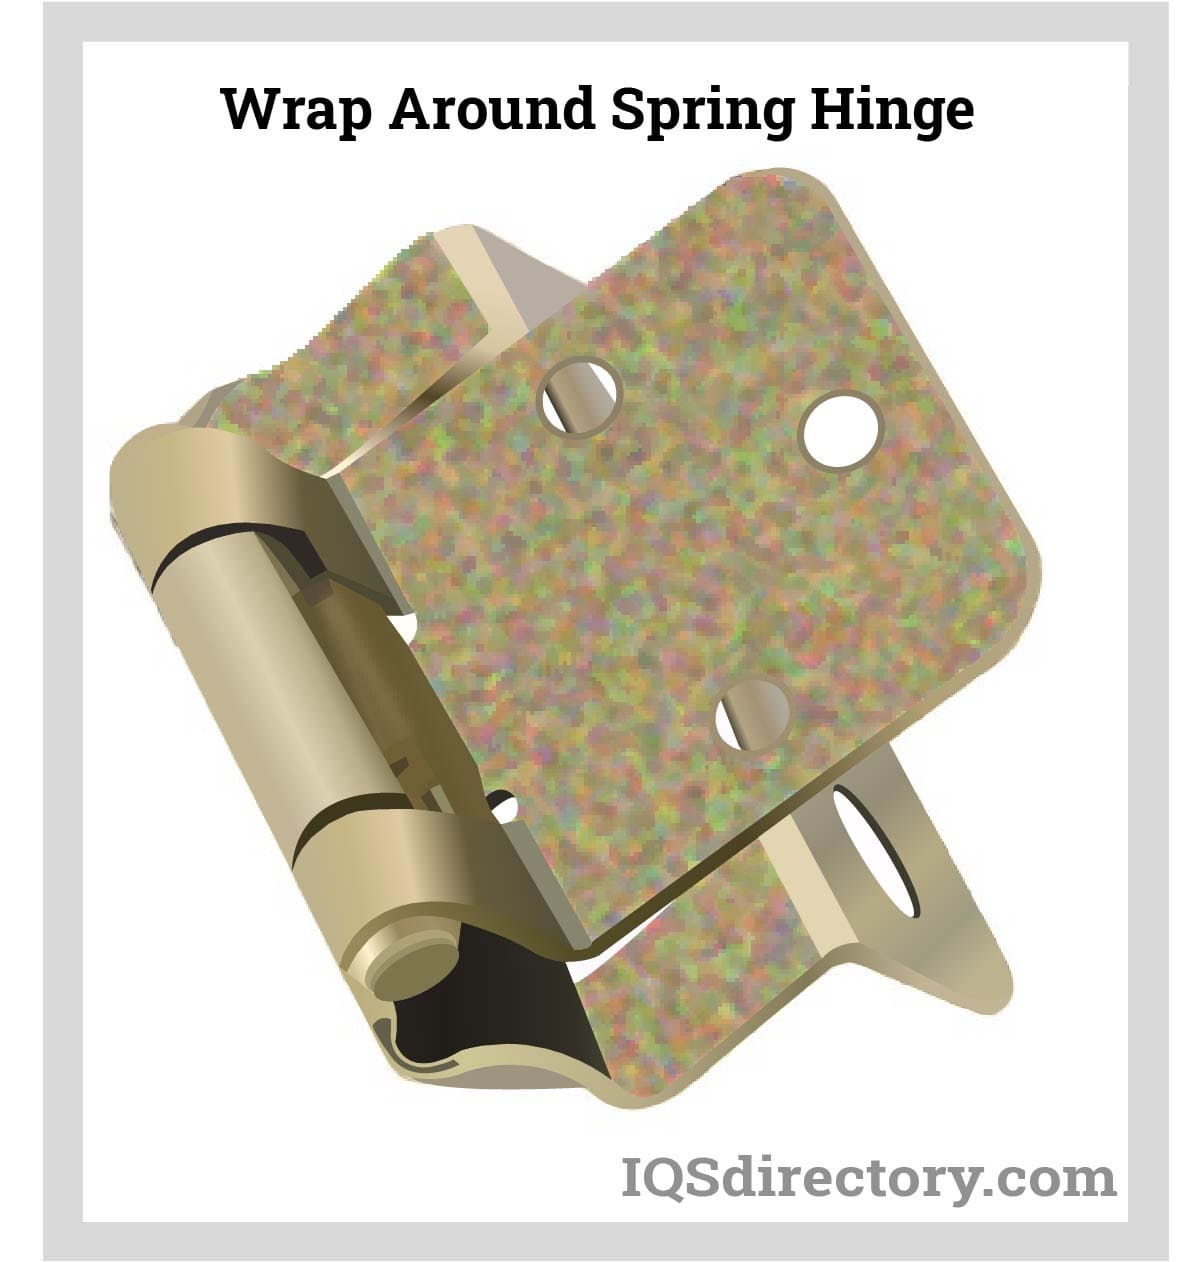 Wrap Around Spring Hinge